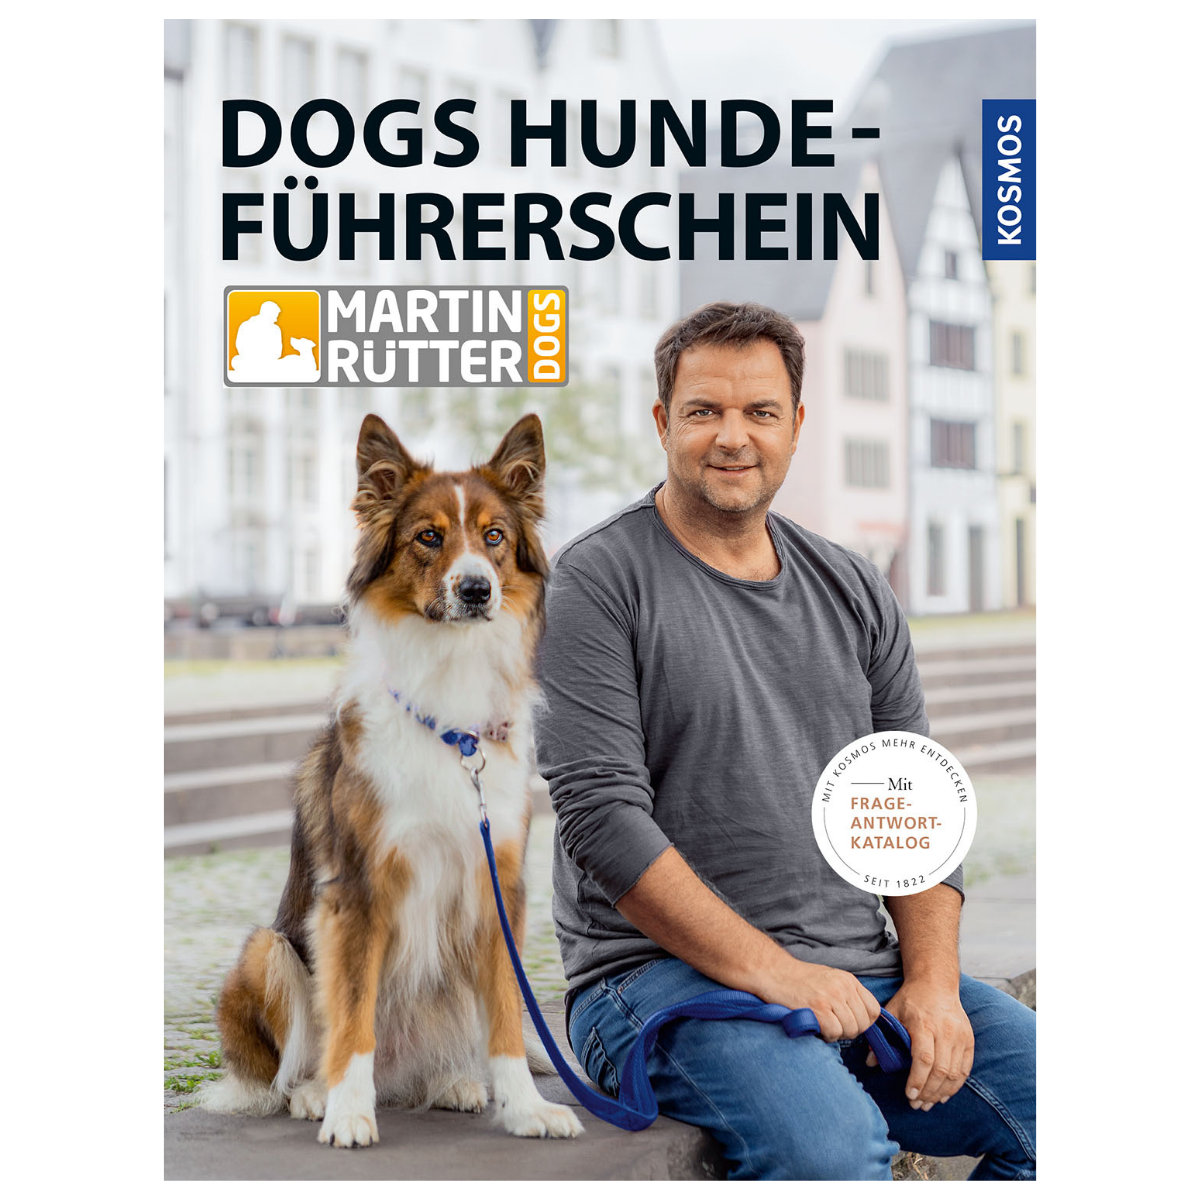 Buch - DOGS Hundeführerschein mit Frage-Antwort-Katalog